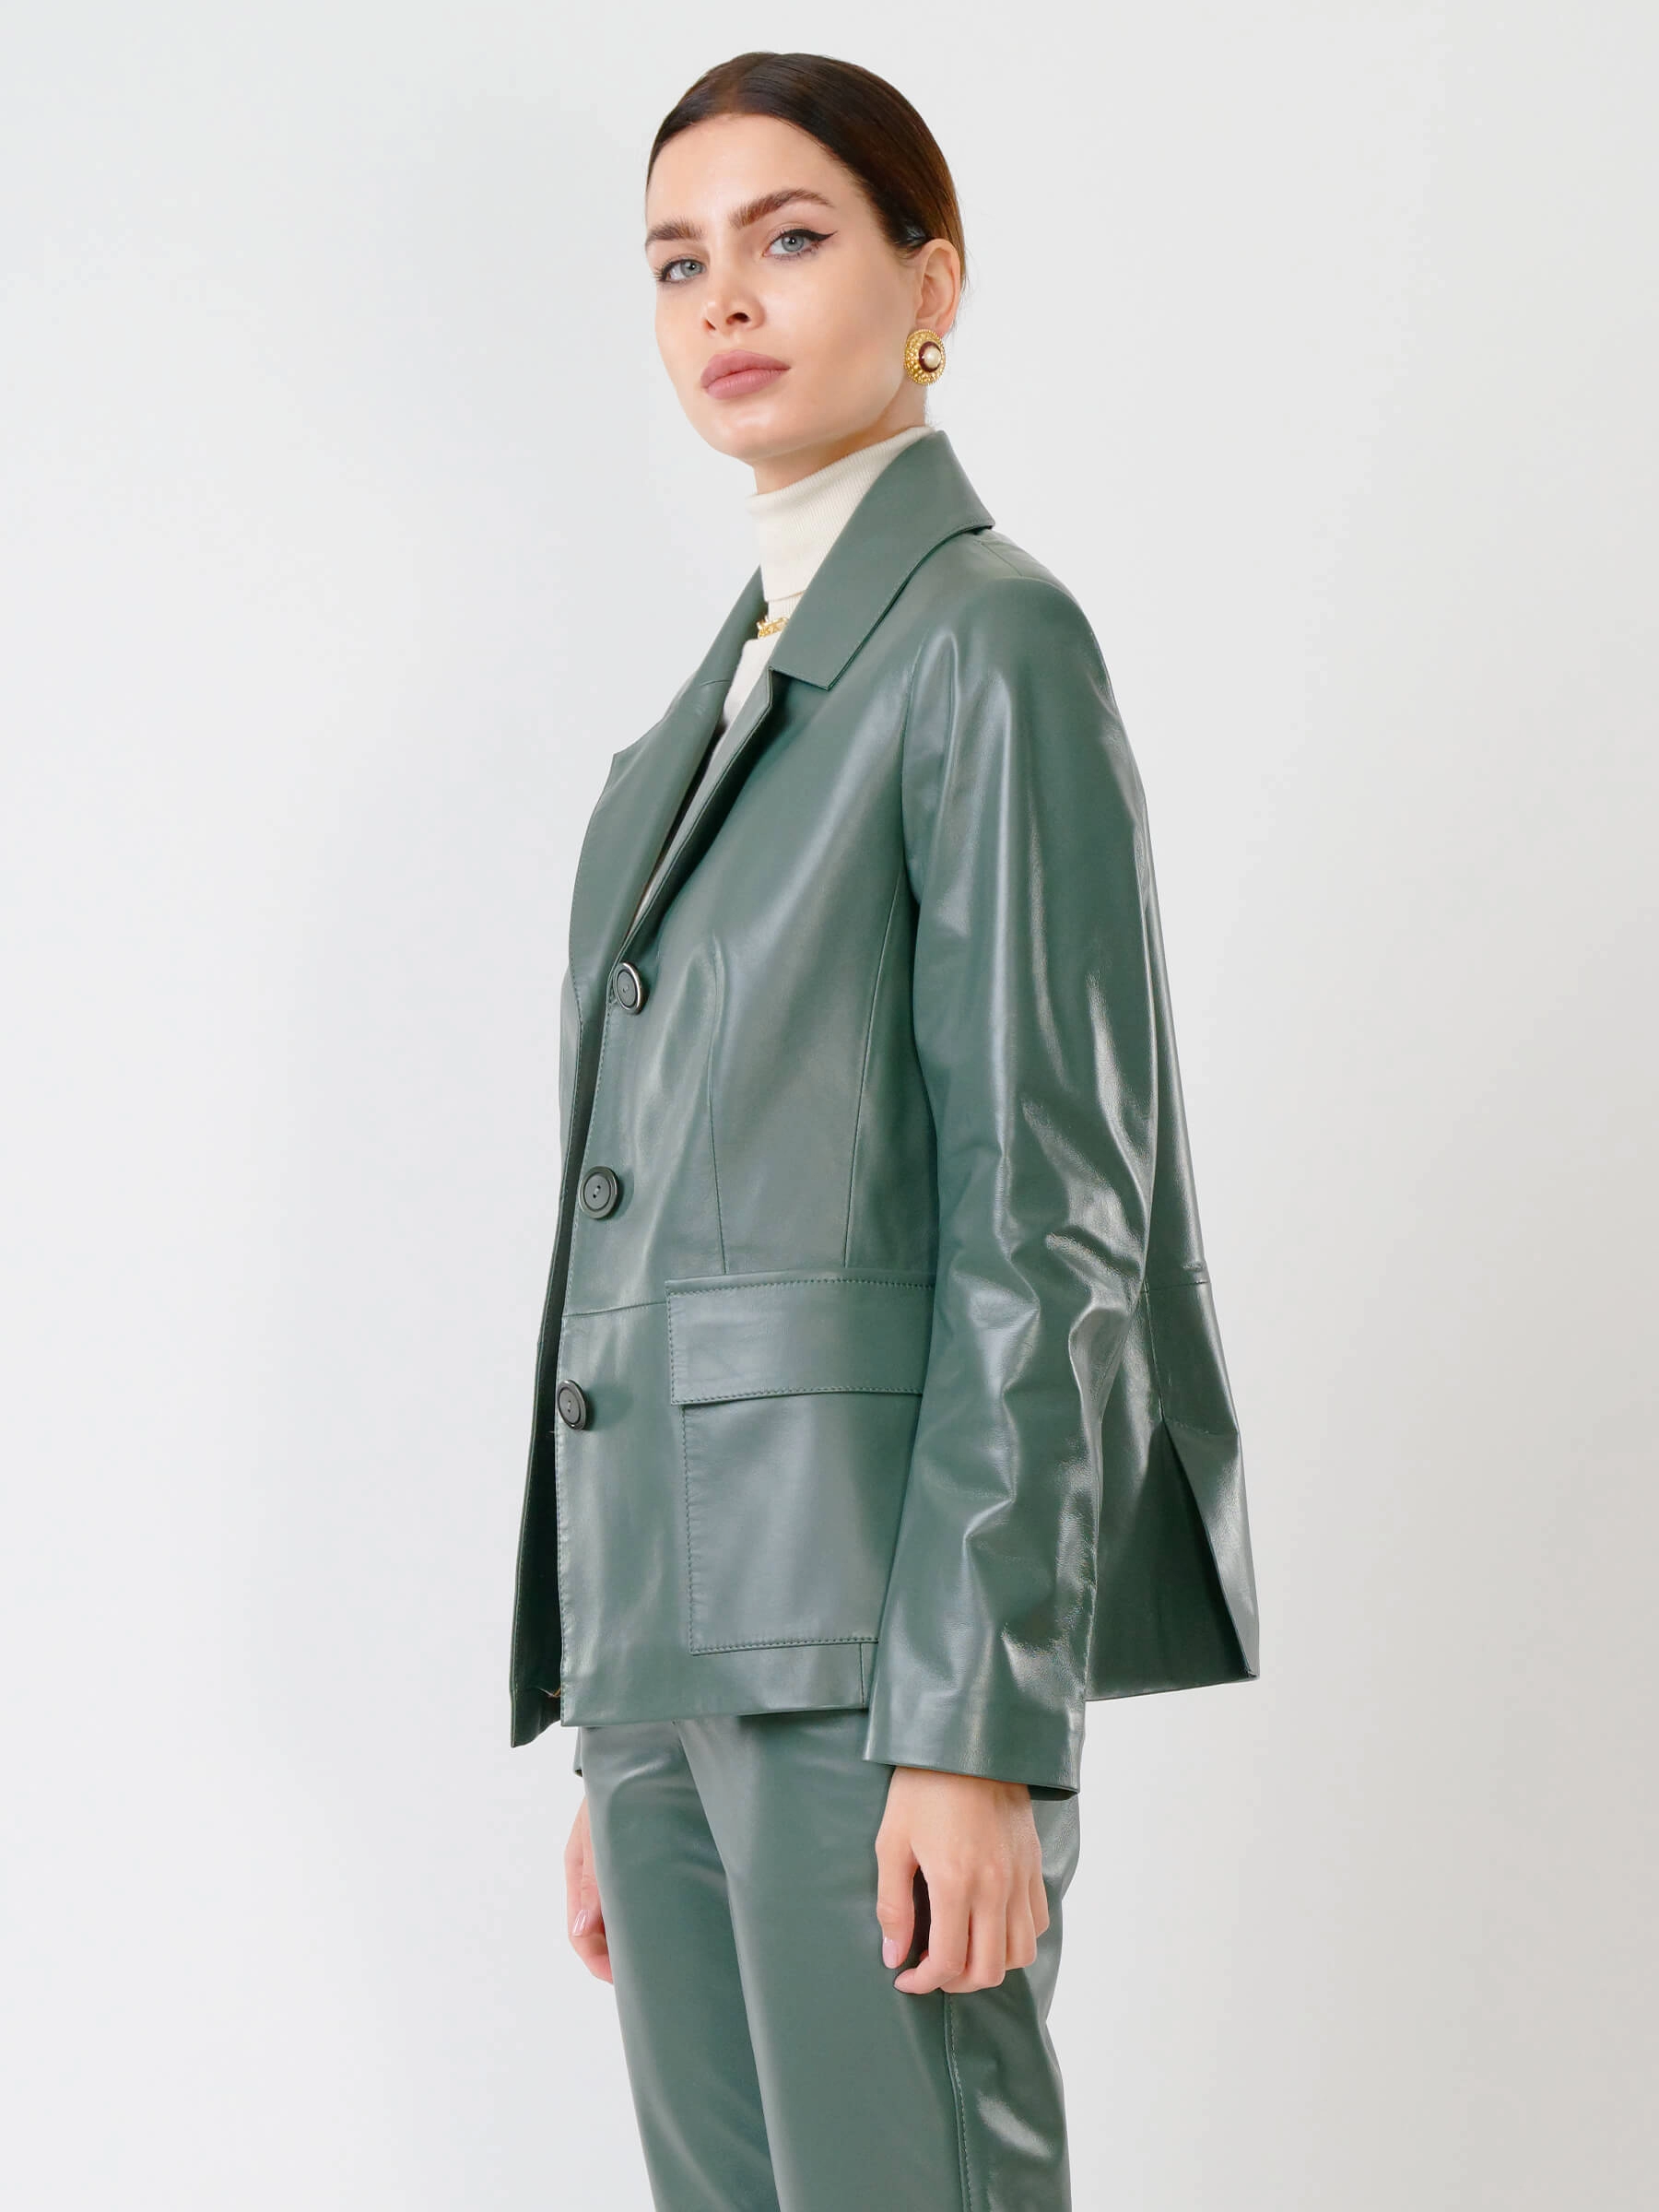 Купить кожаный пиджак женский 3007, оливковый, р. 46, арт. 90680 по цене 31 990 руб. в Москве в магазине Primo Vello